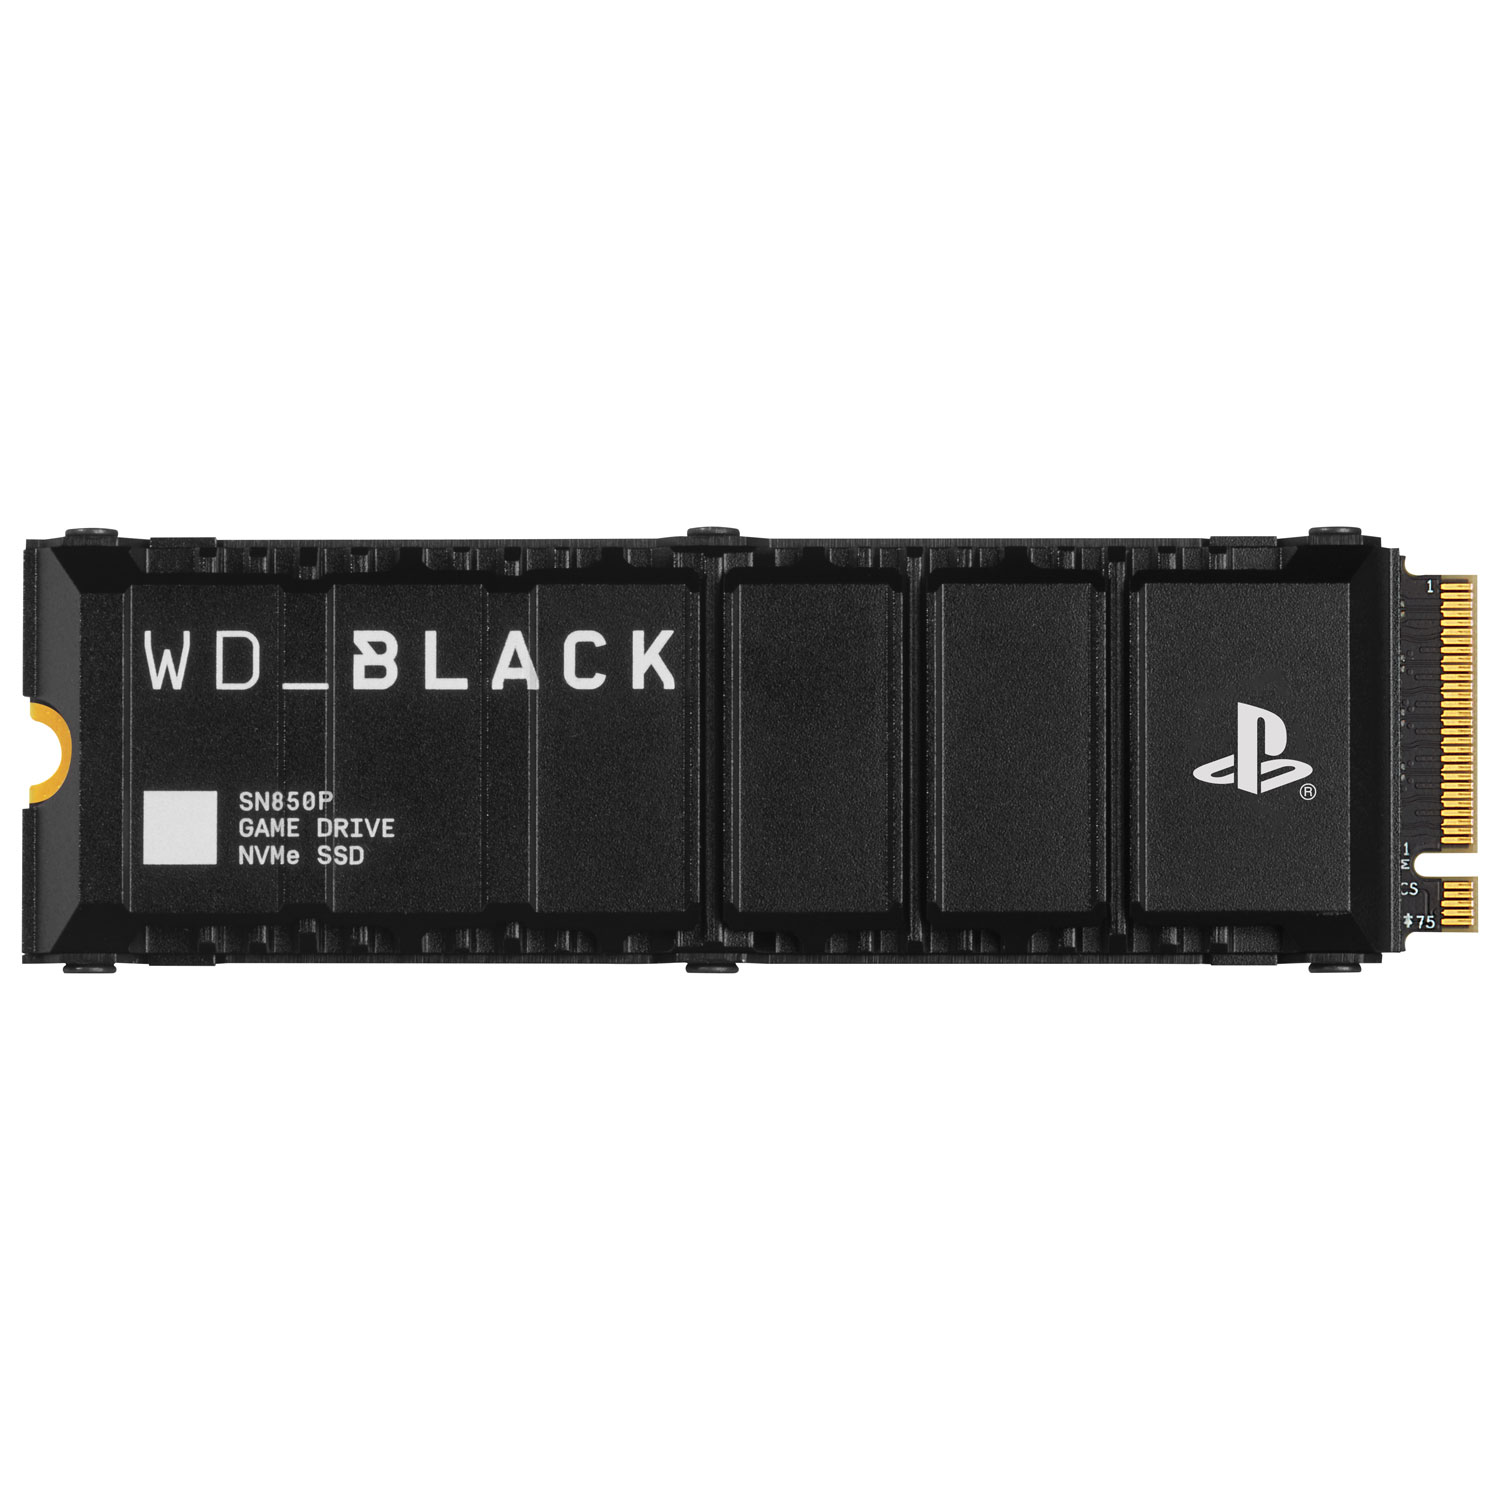 Disque SSD interne NVMe PCI-e WD_BLACK SN850P de 4 To avec dissipateur  thermique - Officiellement autorisé pour la PS5